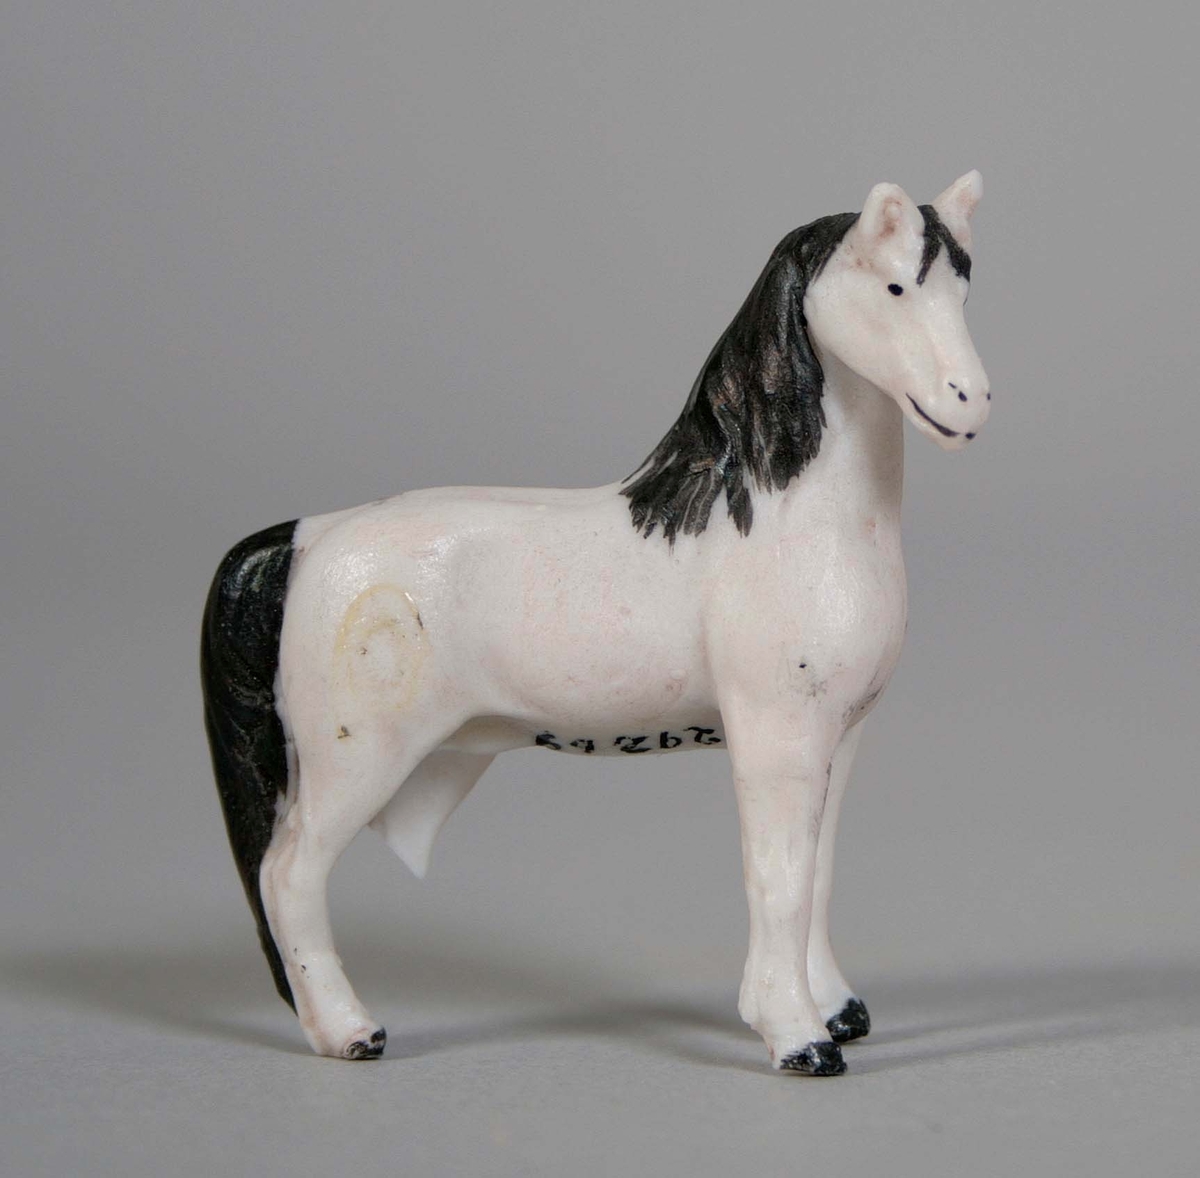 Stående häst, i oglaserat vitt porslin med svartmålad man, svans och klövar. Vänster bakben avbrutet (saknas).